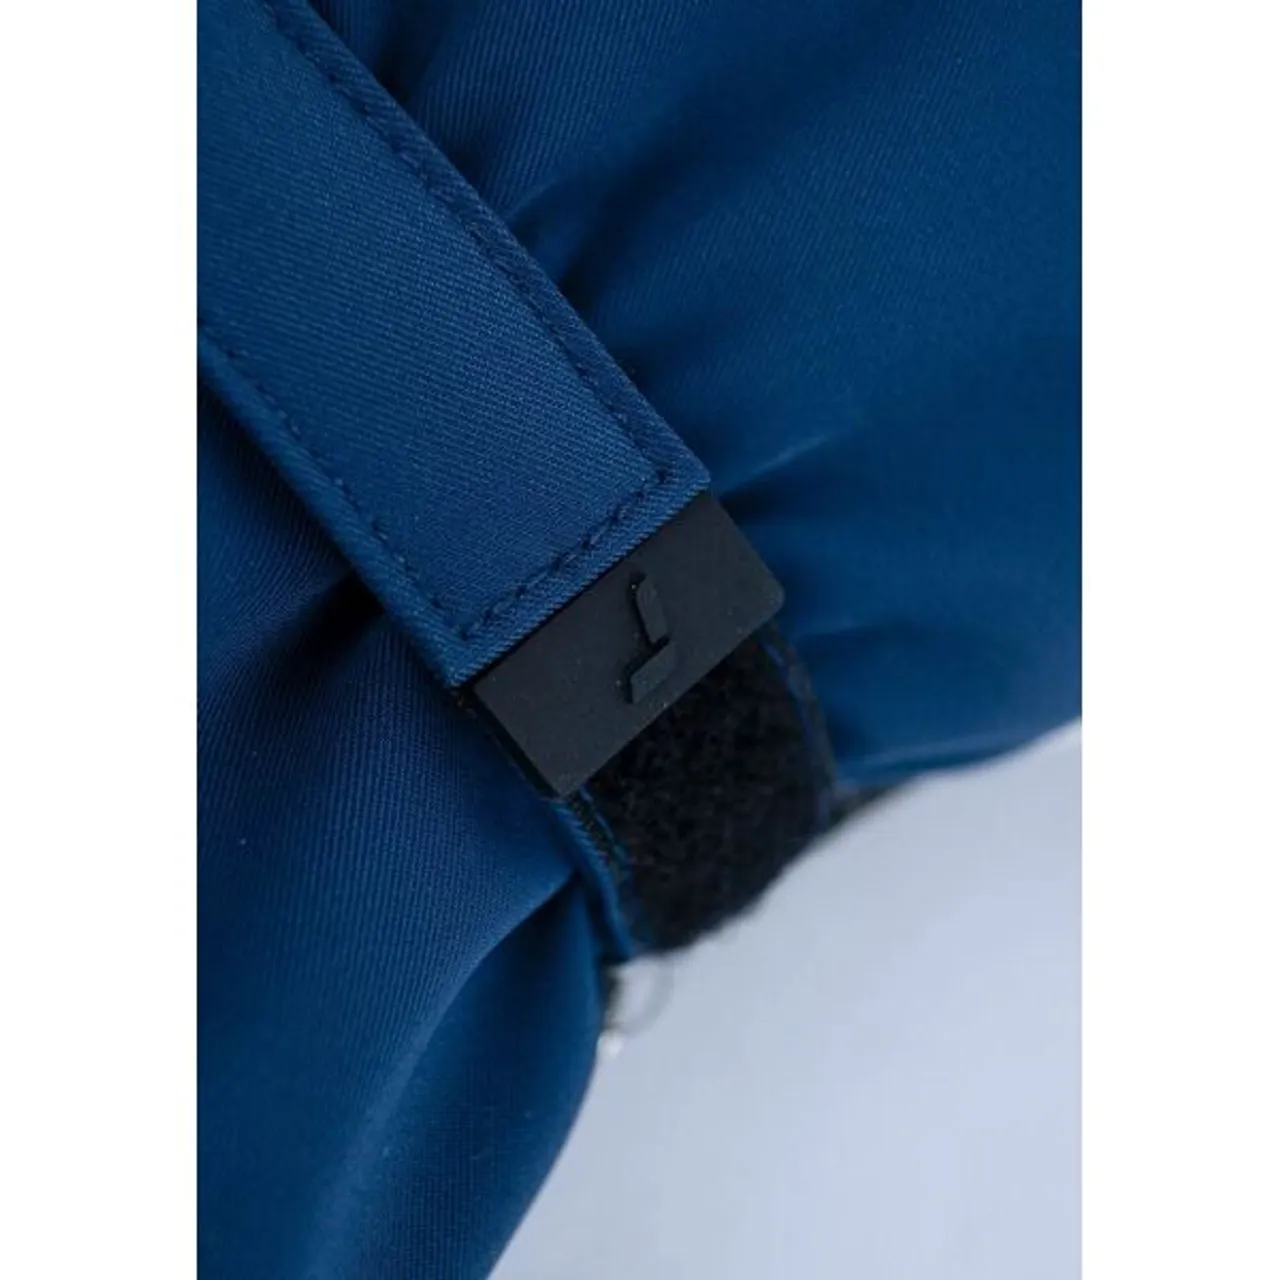 Fäustlinge REUSCH "Sonja R-TEX XT Mitten" Gr. 6,5, blau (dunkelblau, weiß) Damen Handschuhe Fäustlinge extra warm, wasserdicht und atmungsaktiv